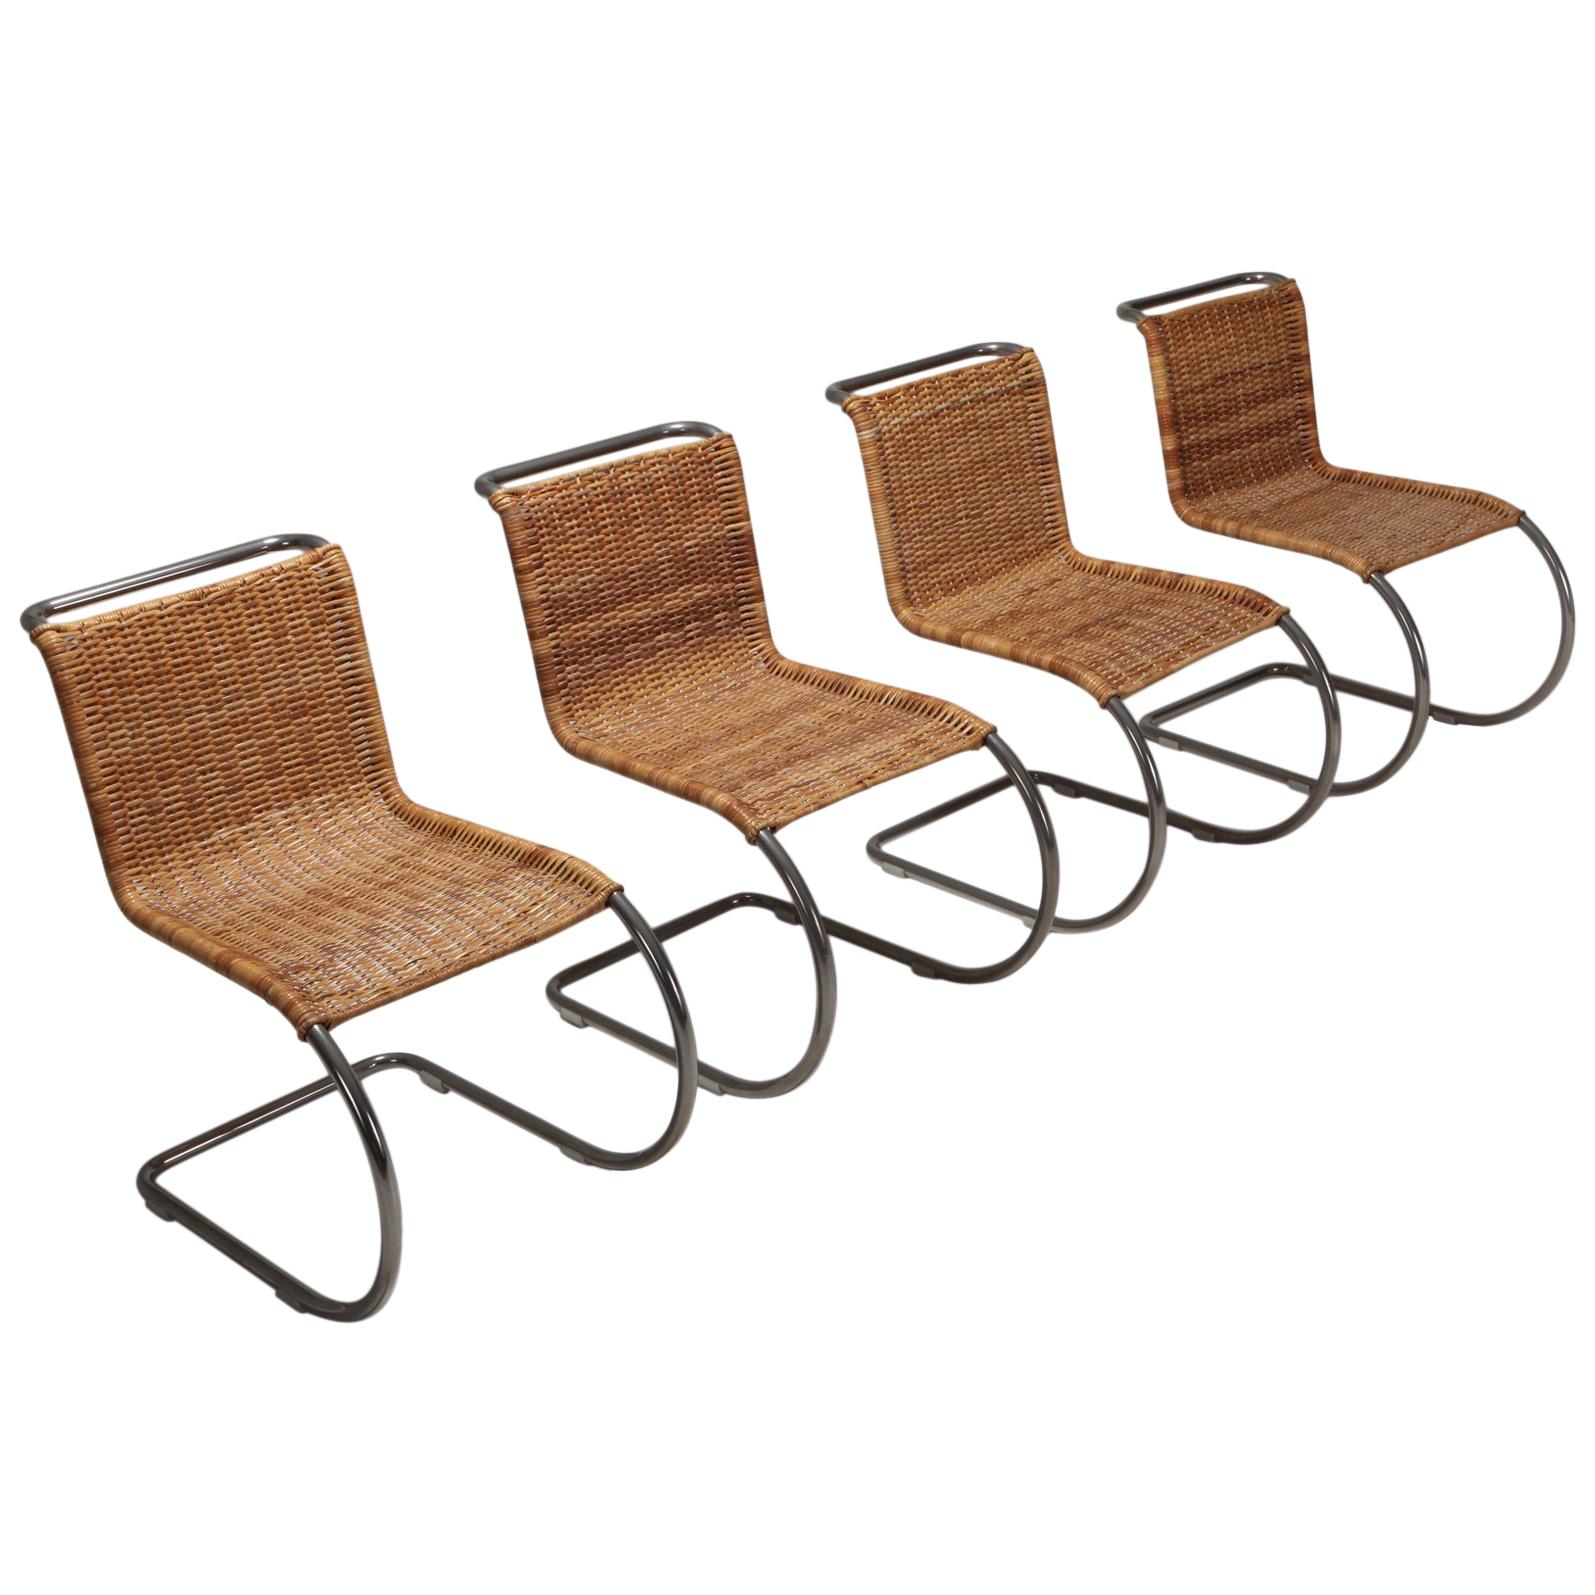 Bauhaus B42 Chair by Mies van der Rohe for Tecta